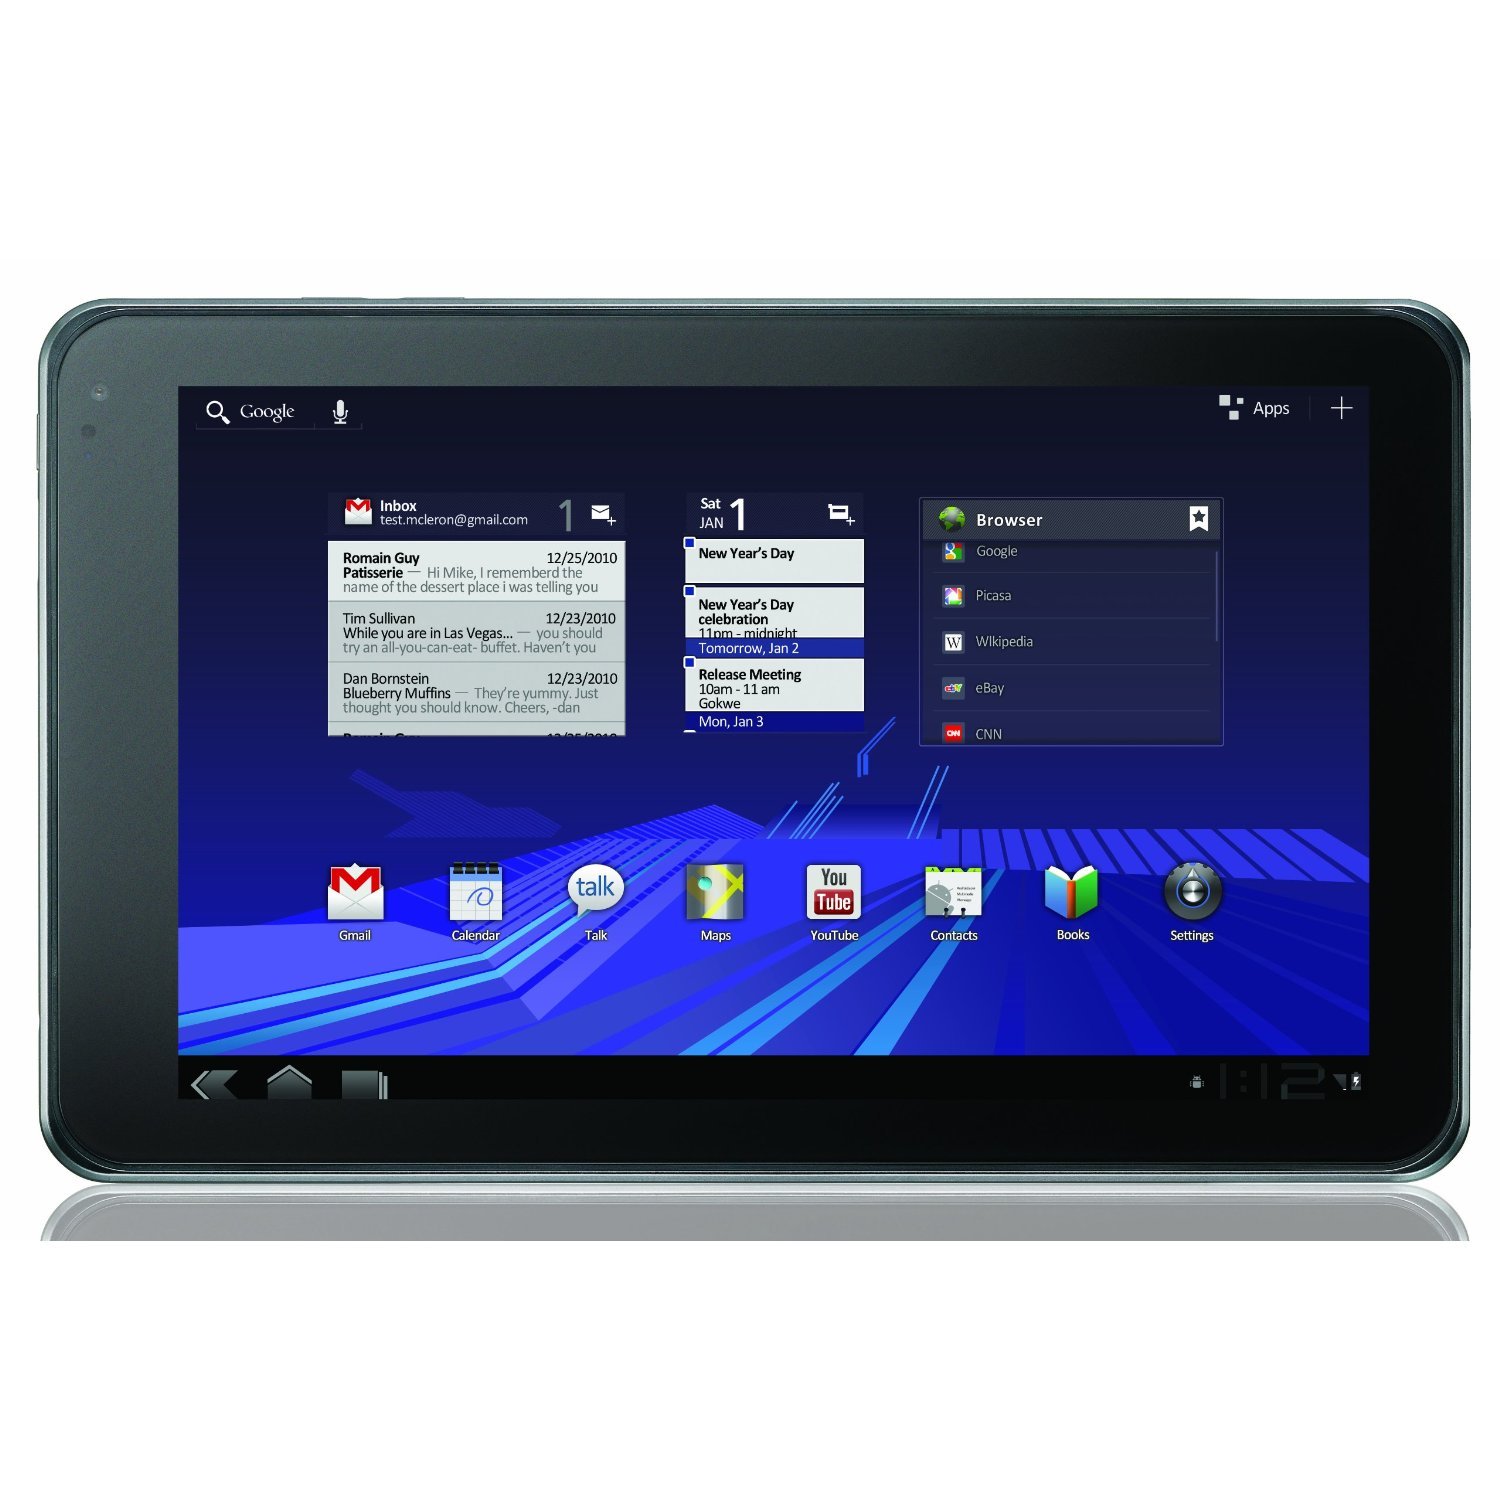 Tablette LG Optimus Pad, écran 8.9’’, Android 3.0 : sortie officielle en France 1